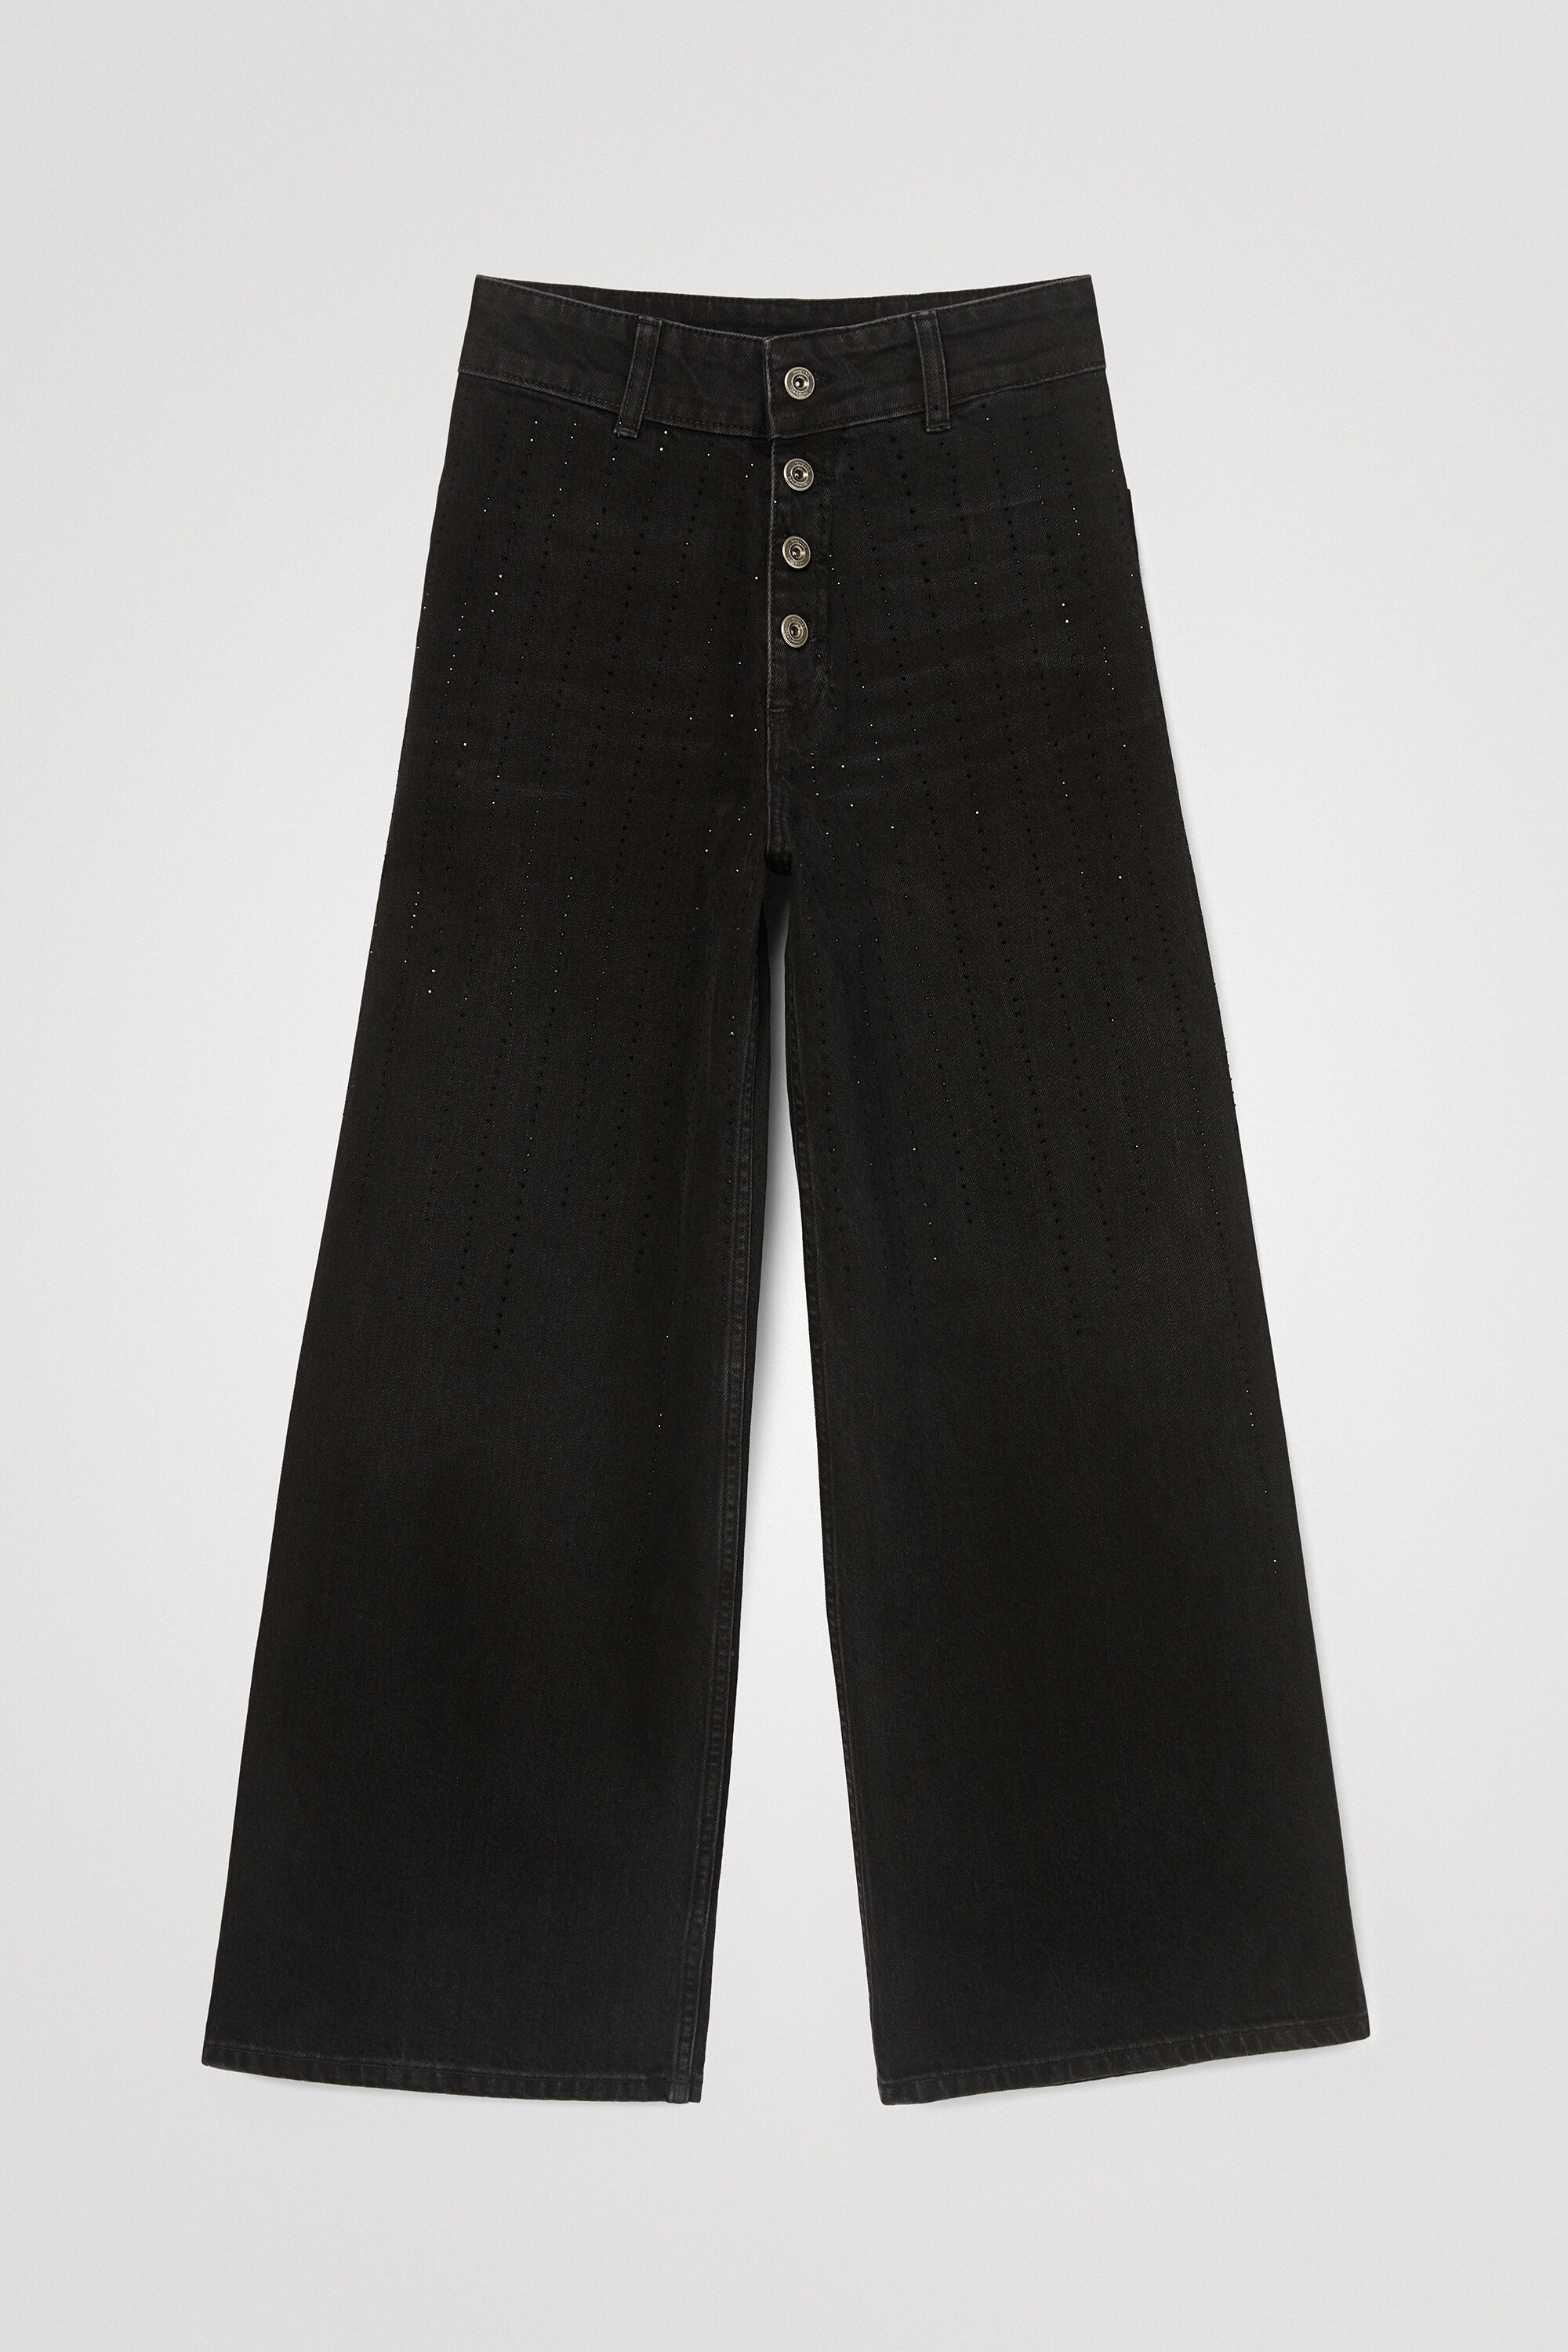 Hosen - Gerade Jeans weites Bein Zierdeails  - Onlineshop Desigual